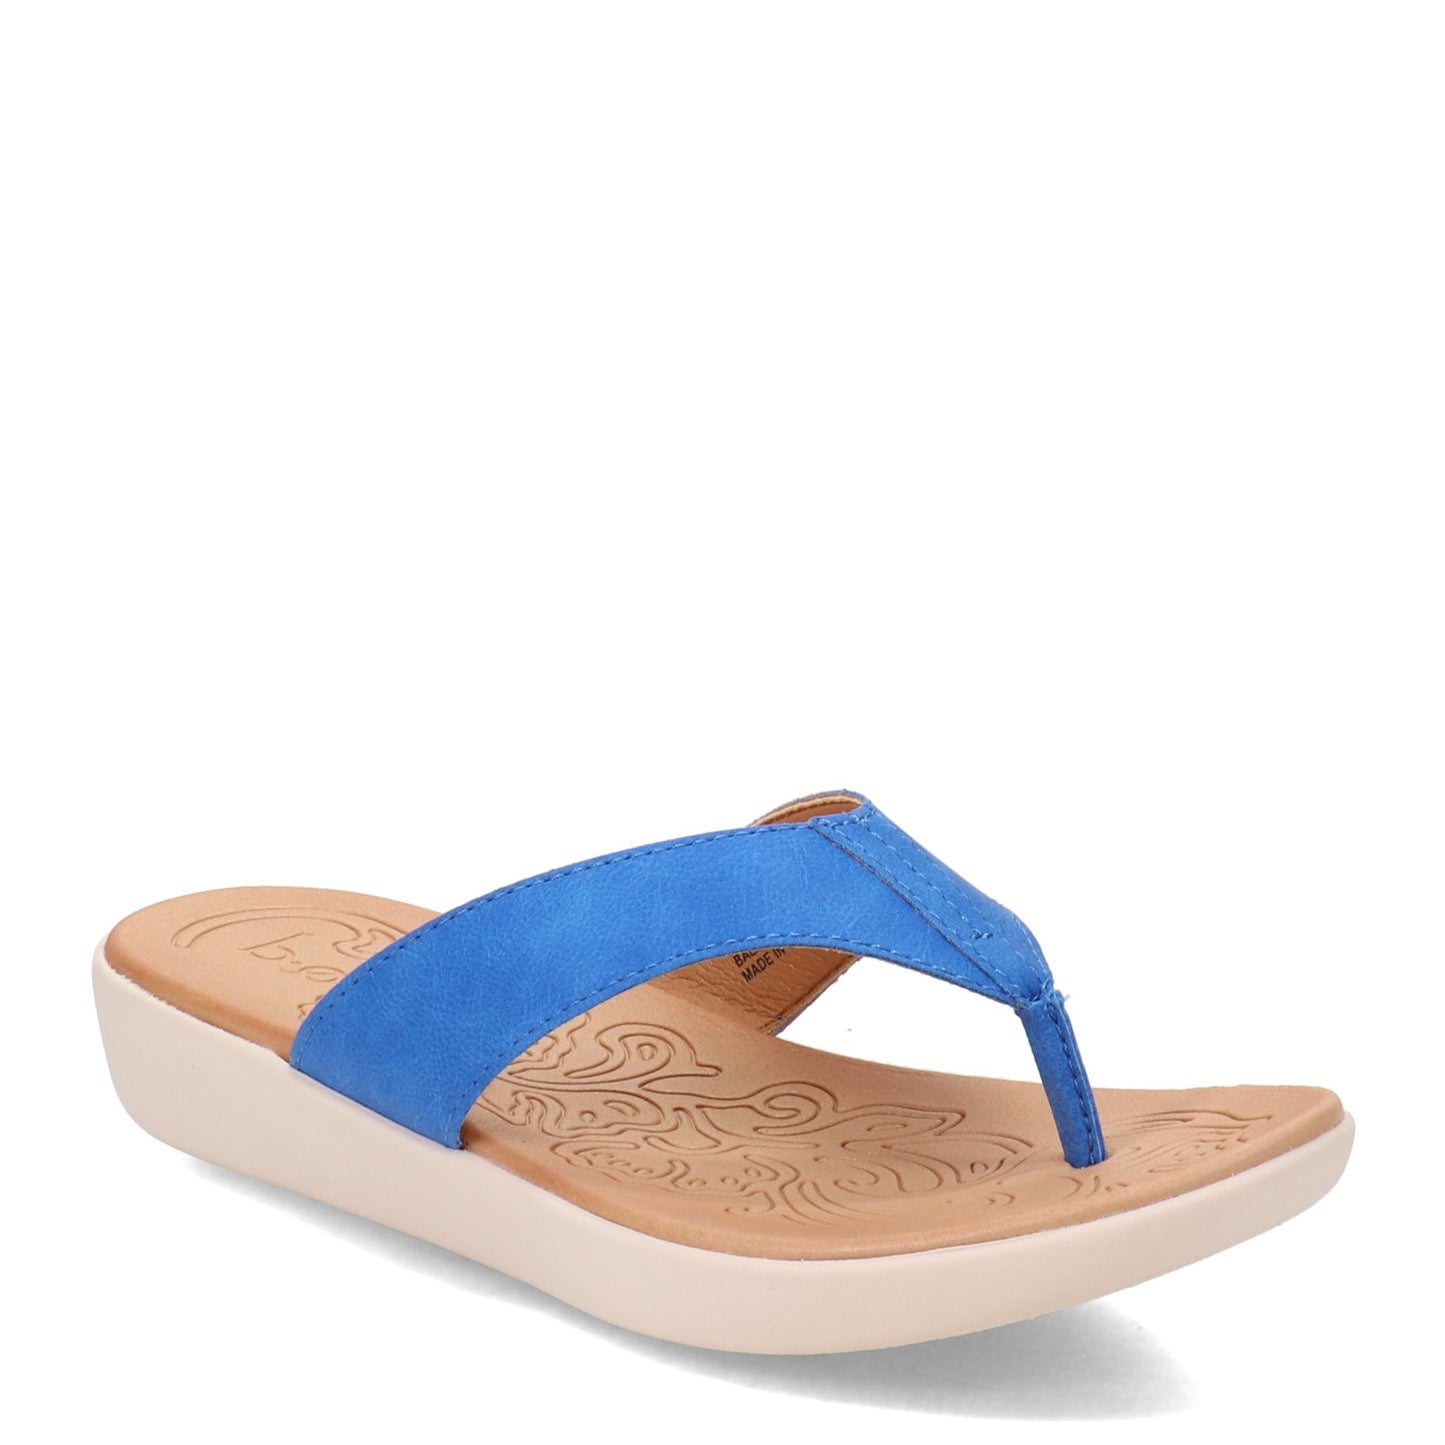 Peltz Shoes  Women's b.o.c Aimee Sandal BLUE BRIGHT BC0003554